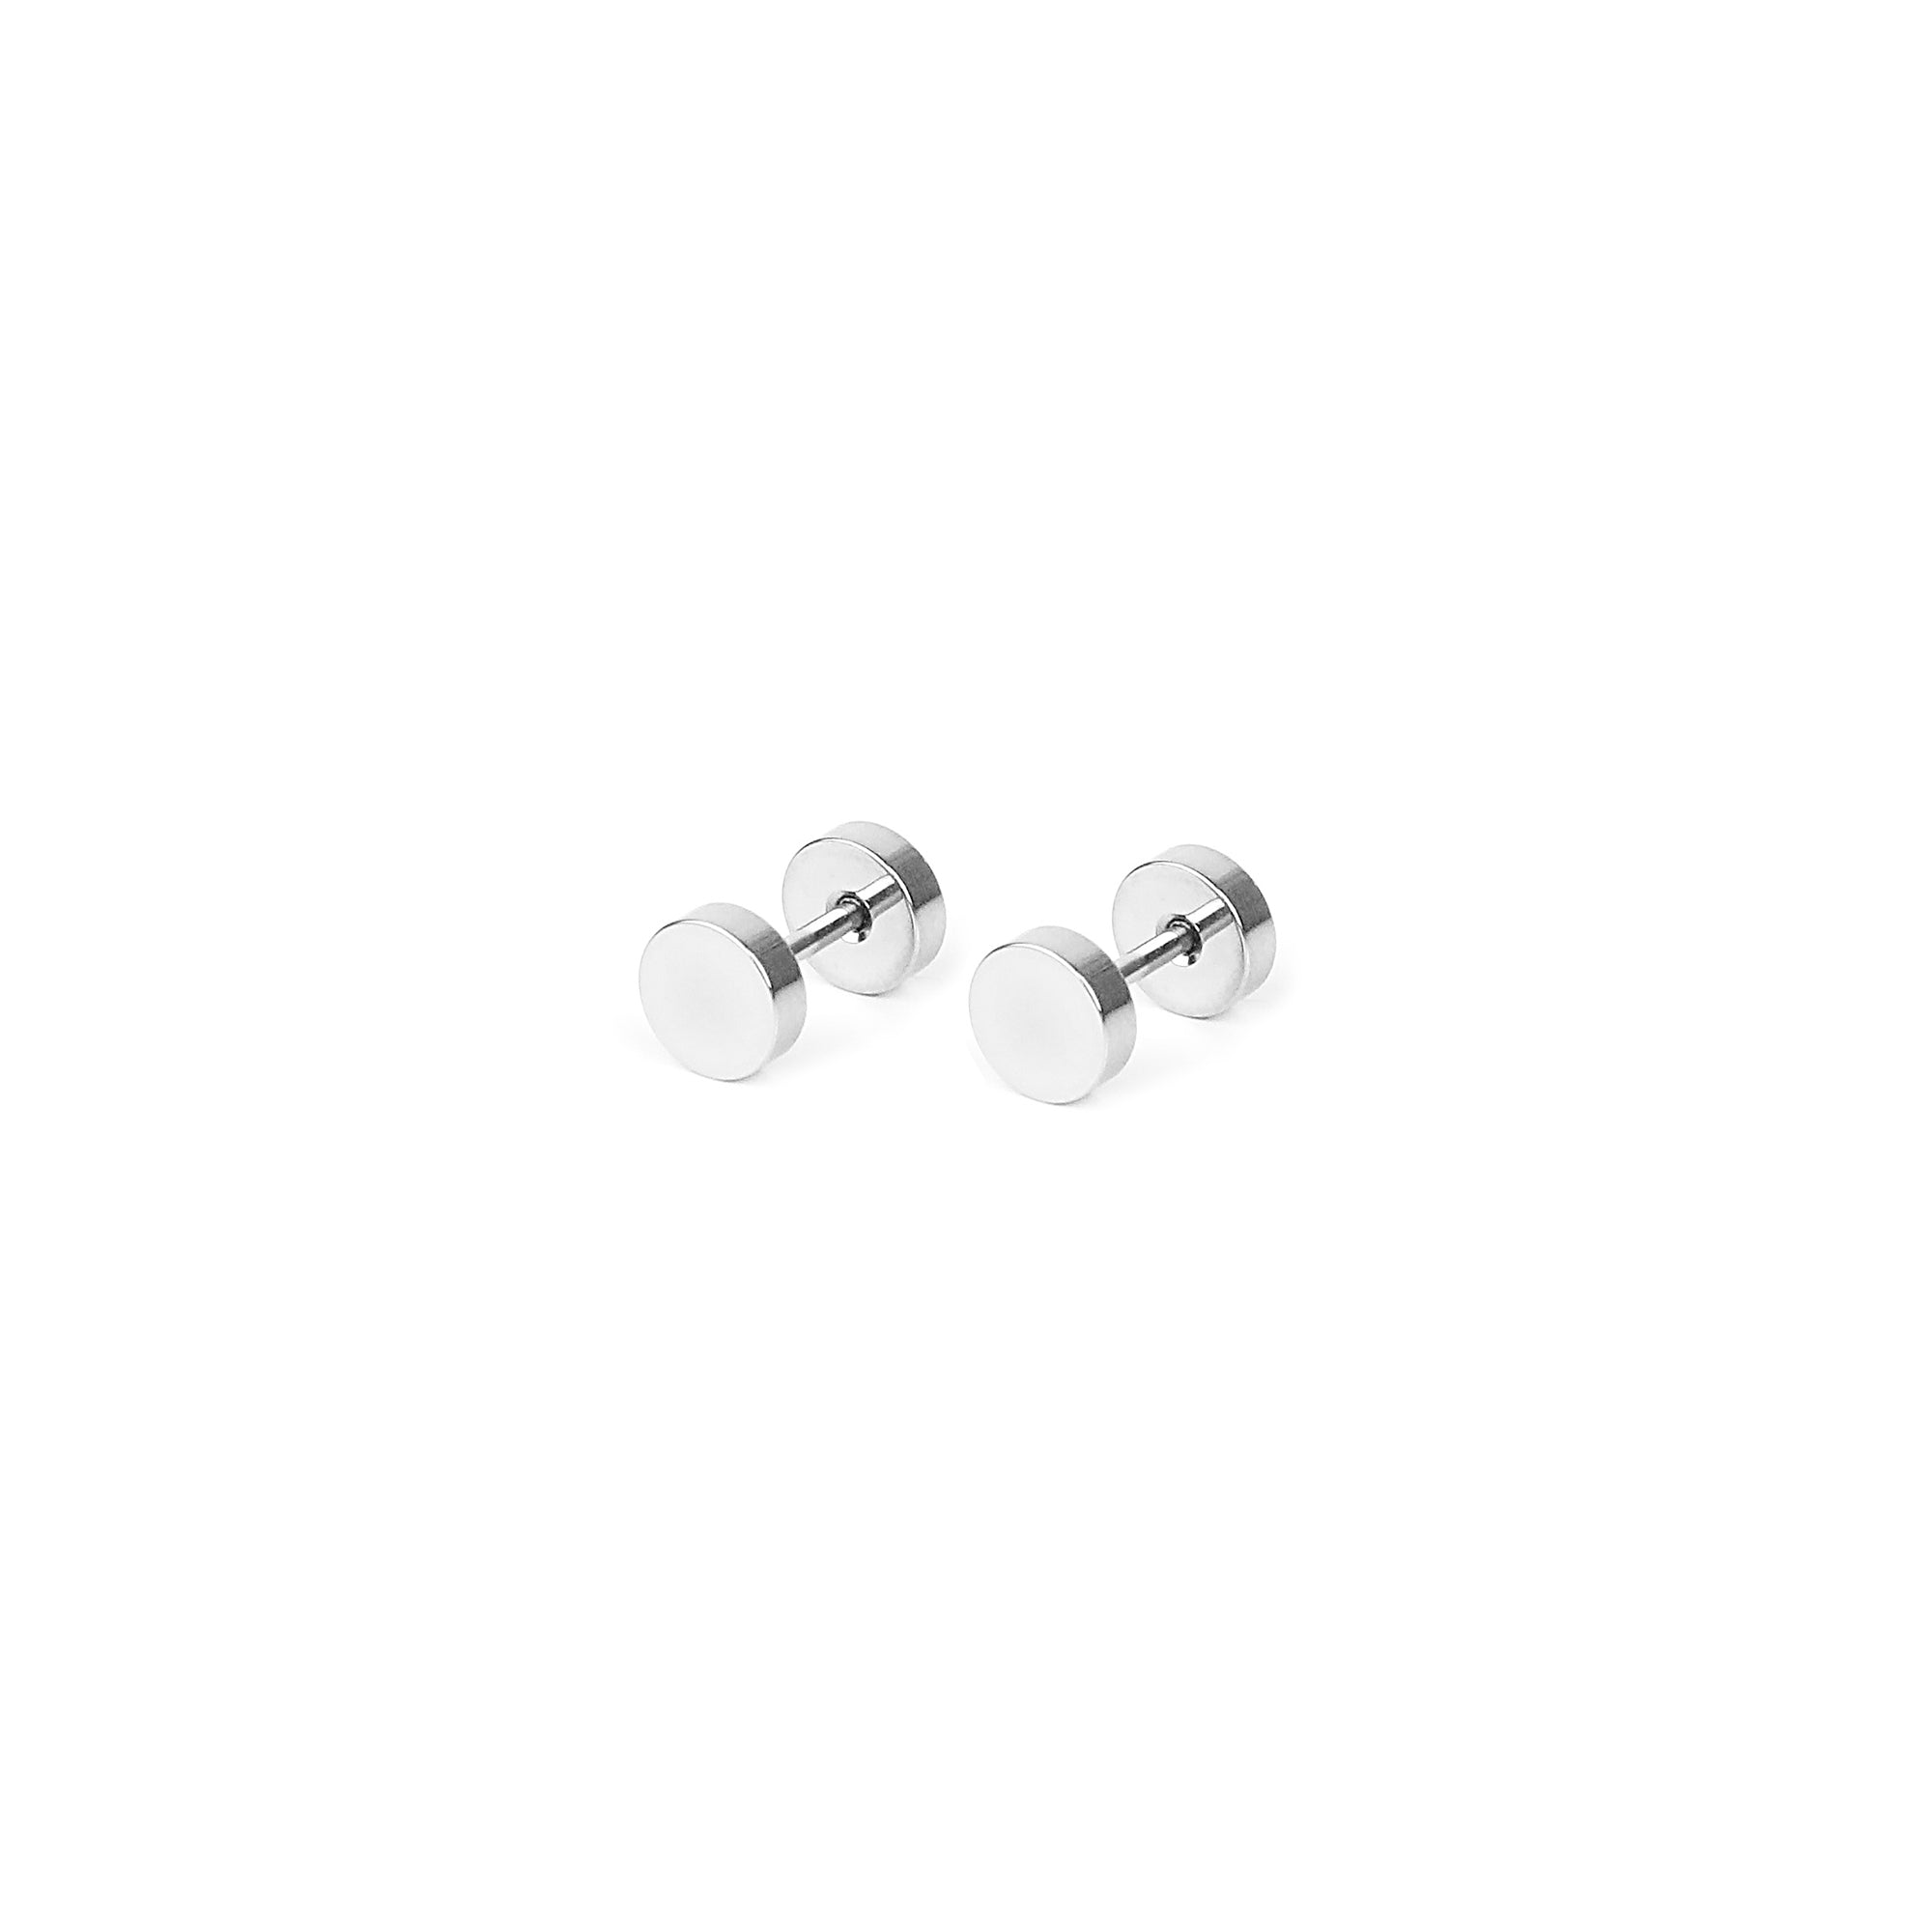 Stud Earring - Silver 6mm